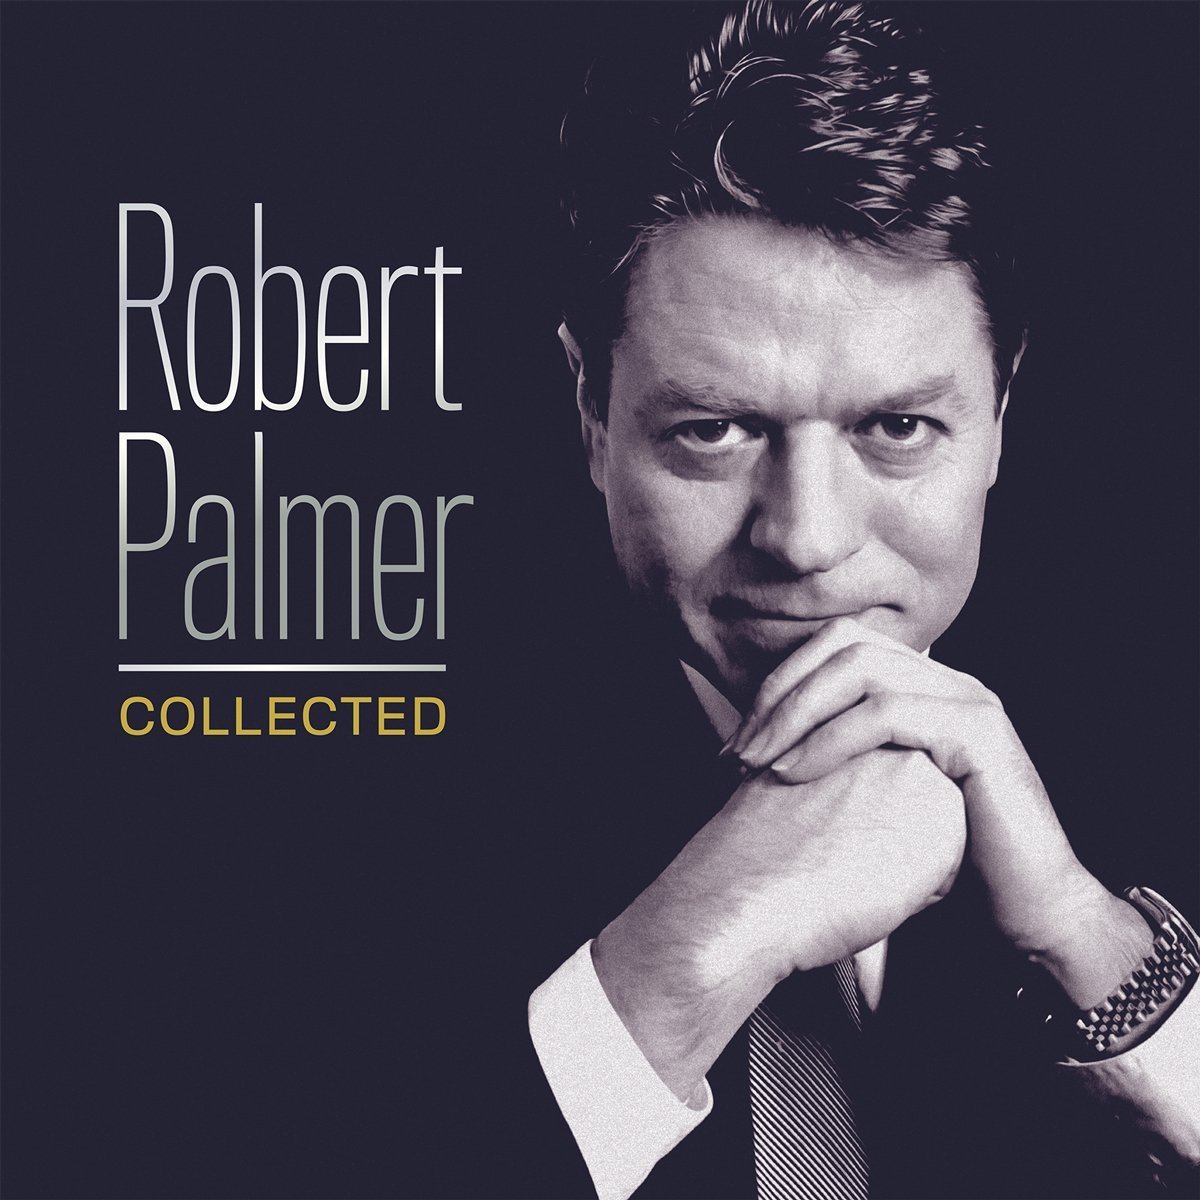 catalog 02 17 Robert PalmerLP